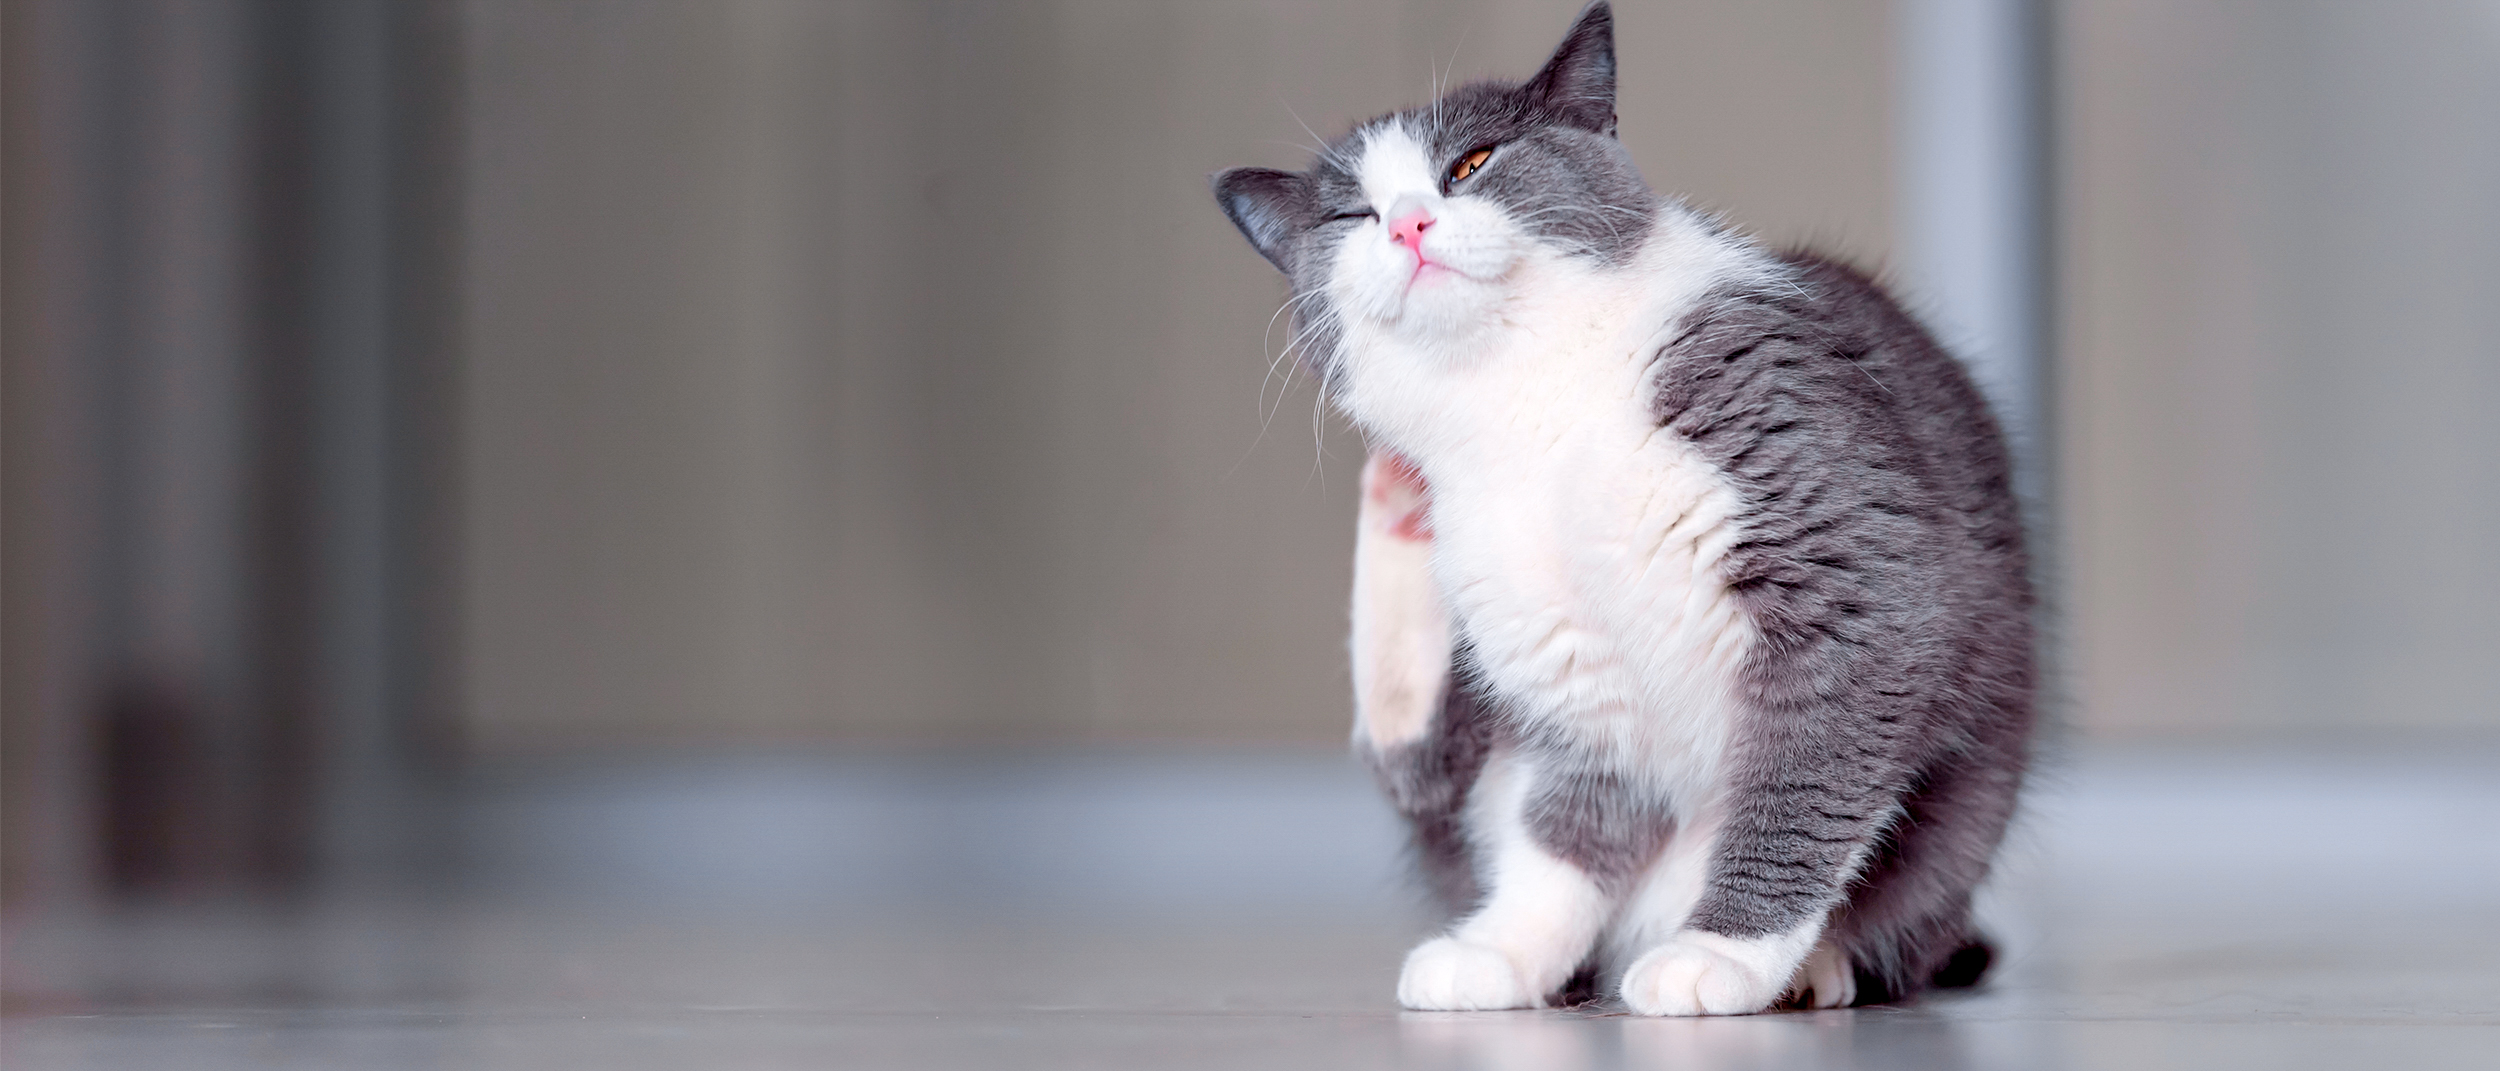 Кожный зуд у кошки - основные причины и профилактика | Royal Canin UA